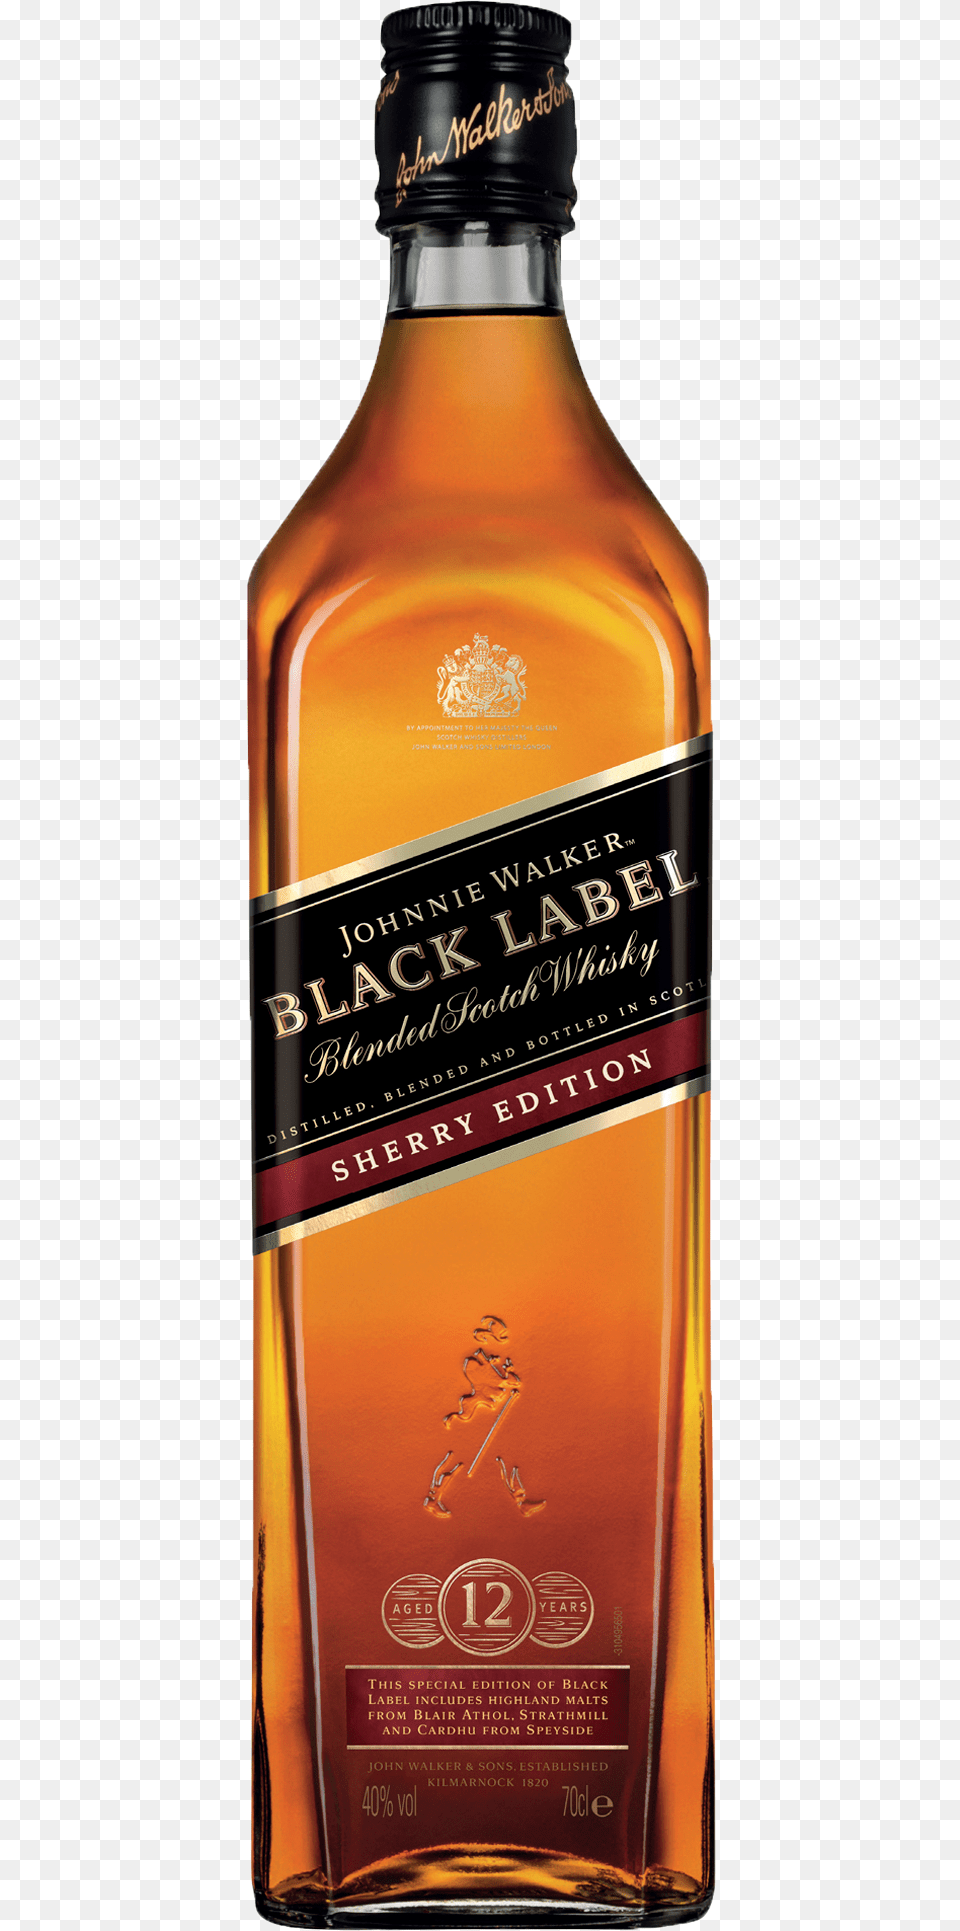 Johnnie Walker Black Label Johnnie Walker Black Label Sherry Edition, Alcohol, Beverage, Liquor, Whisky Png Image